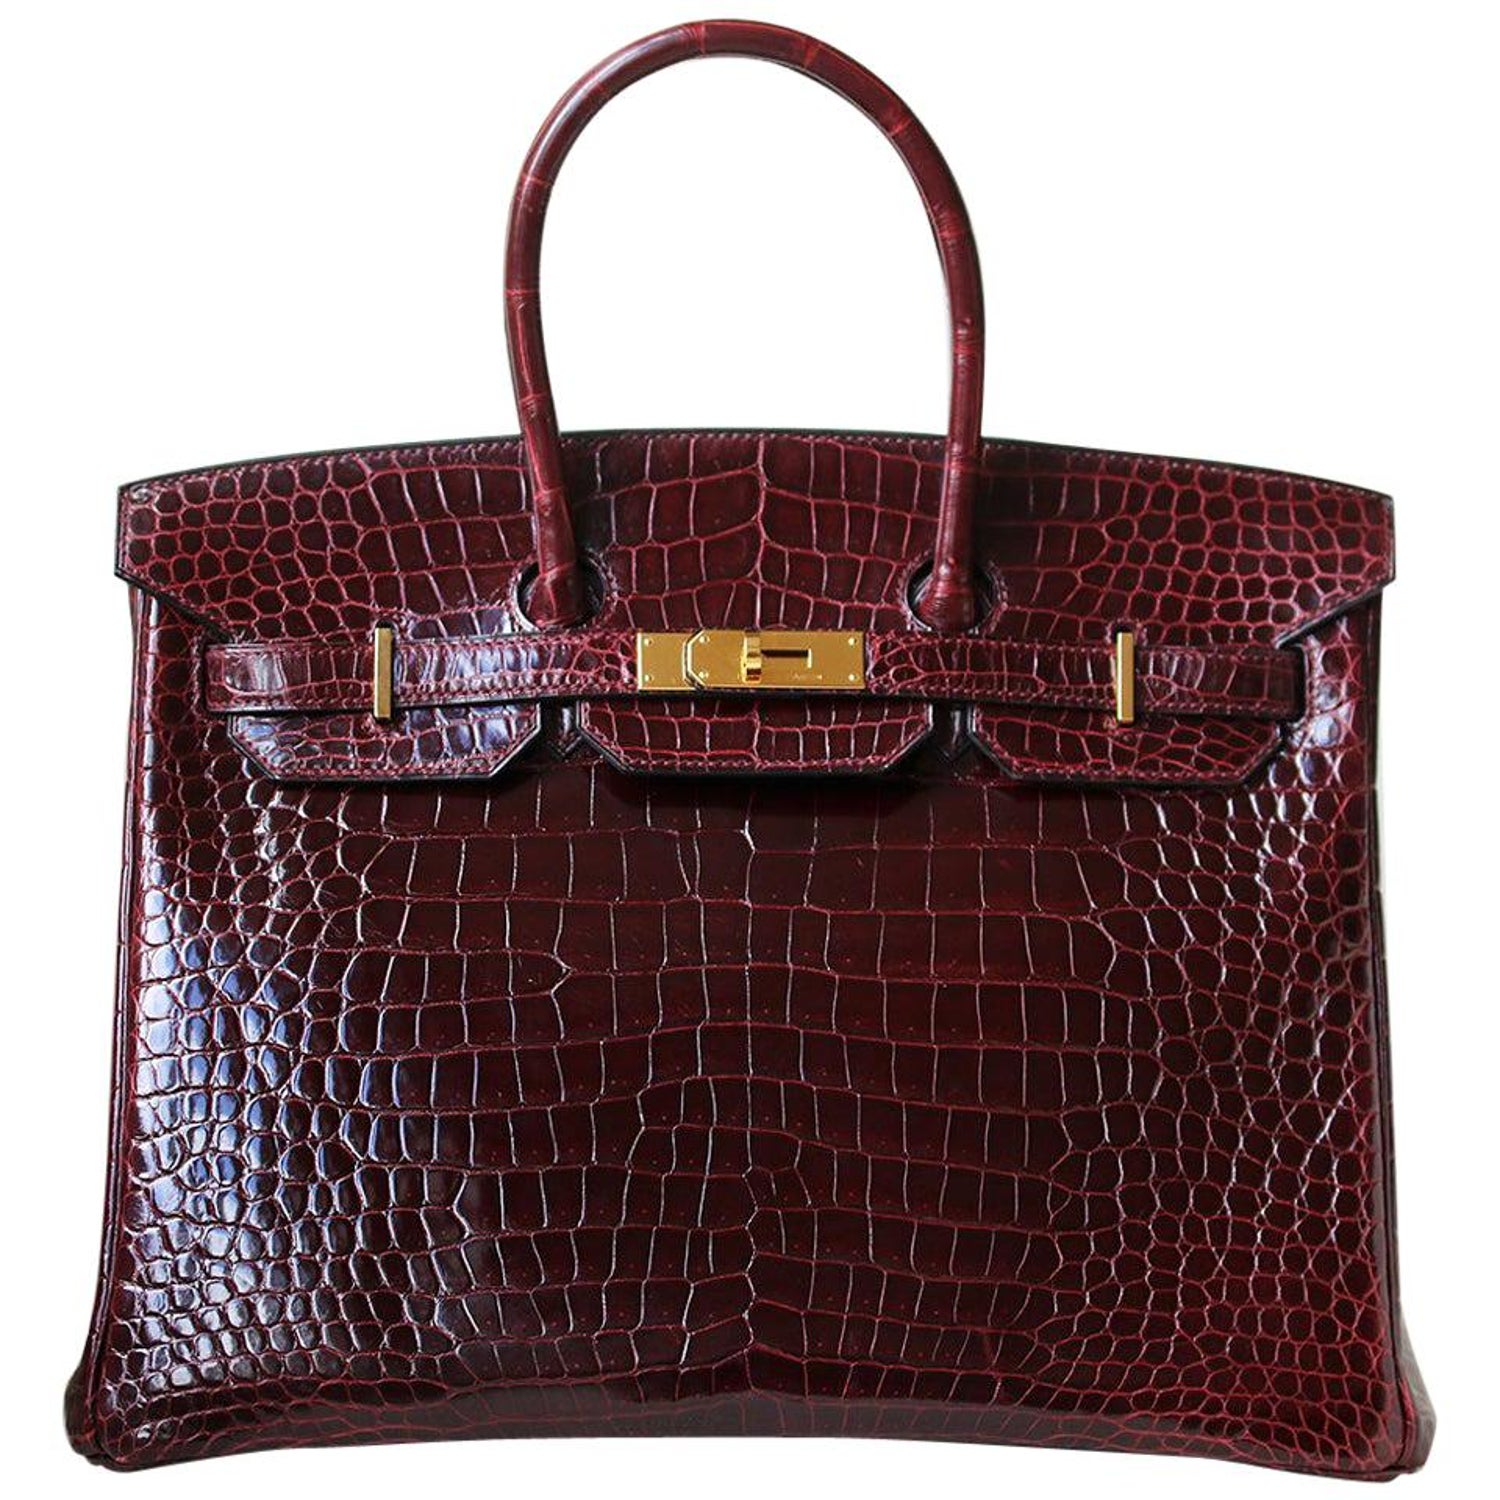 Hermes Birkin Crocodile Burgundy - For Sale on 1stDibs  hermes birkin  burgundy, hermes birkin maroon, burgundy birkin bag